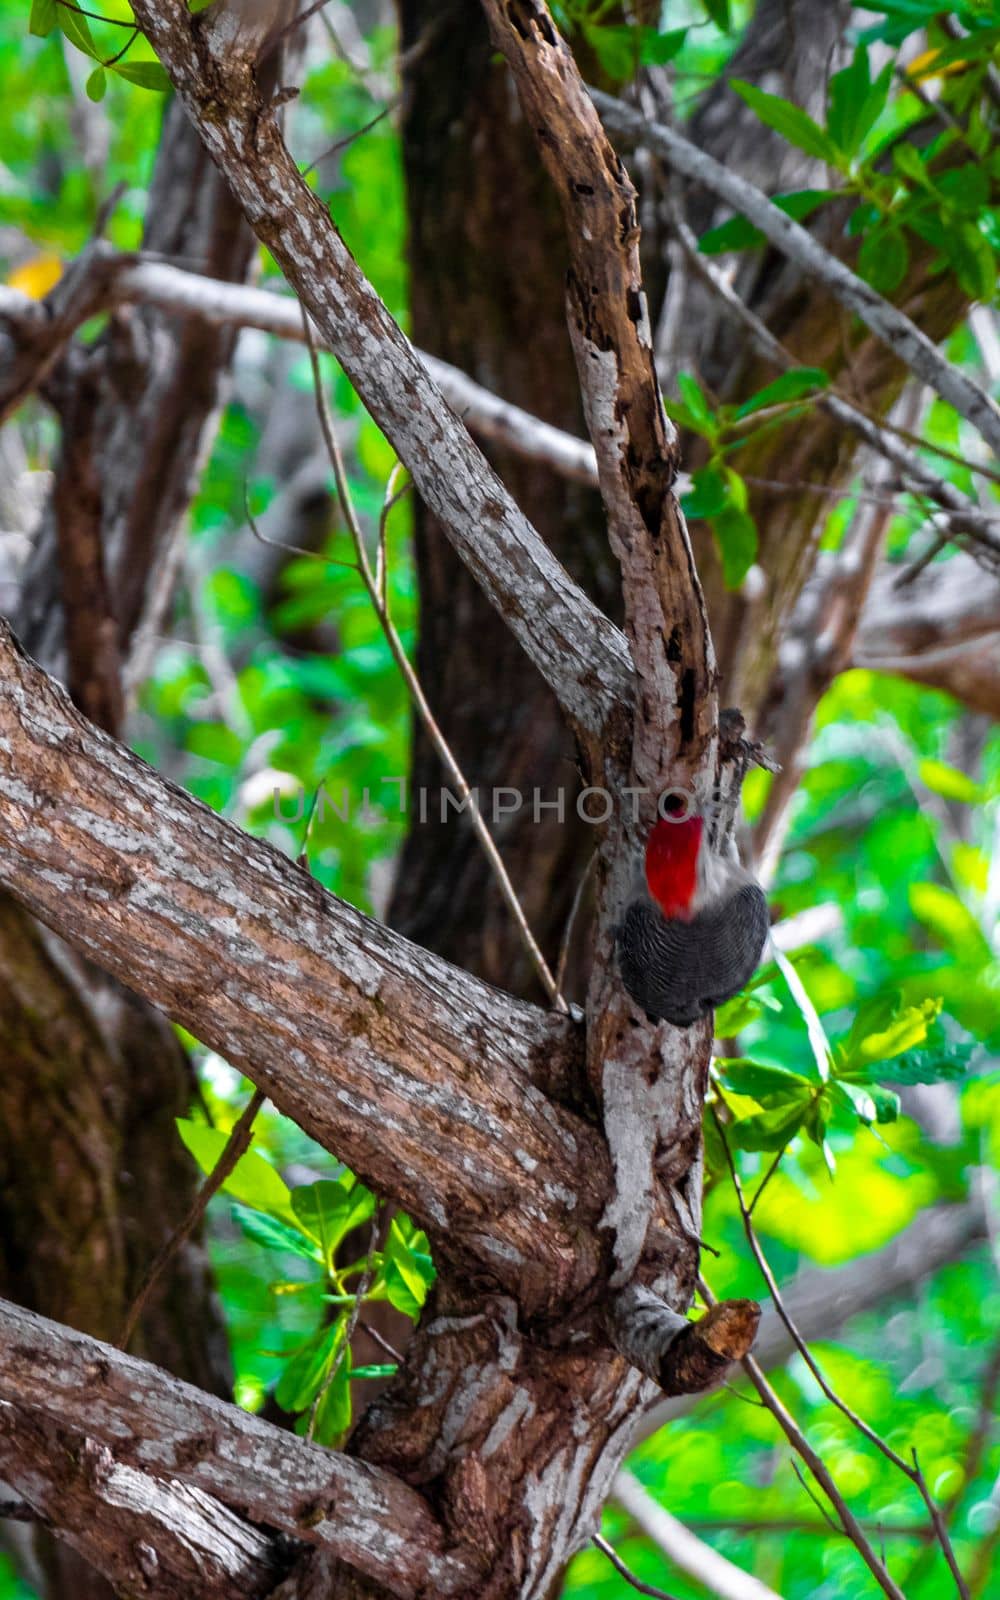 Red bellied woodpecker hammering drill on tree trunk in Mexico. by Arkadij